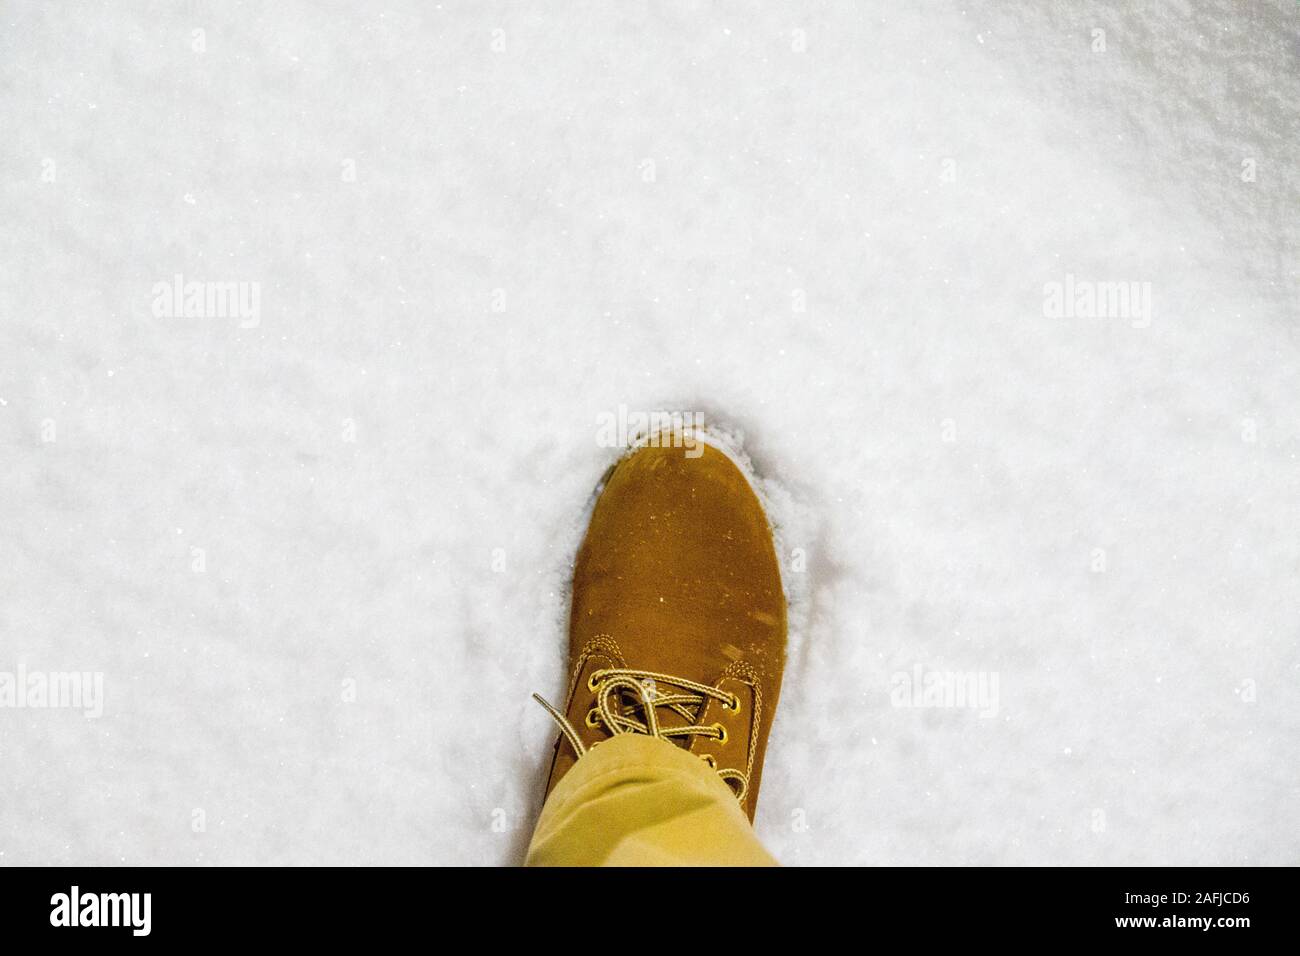 Caterpillar Timberland marrone cuoio lavoro scarpe e stivali nella neve Foto Stock